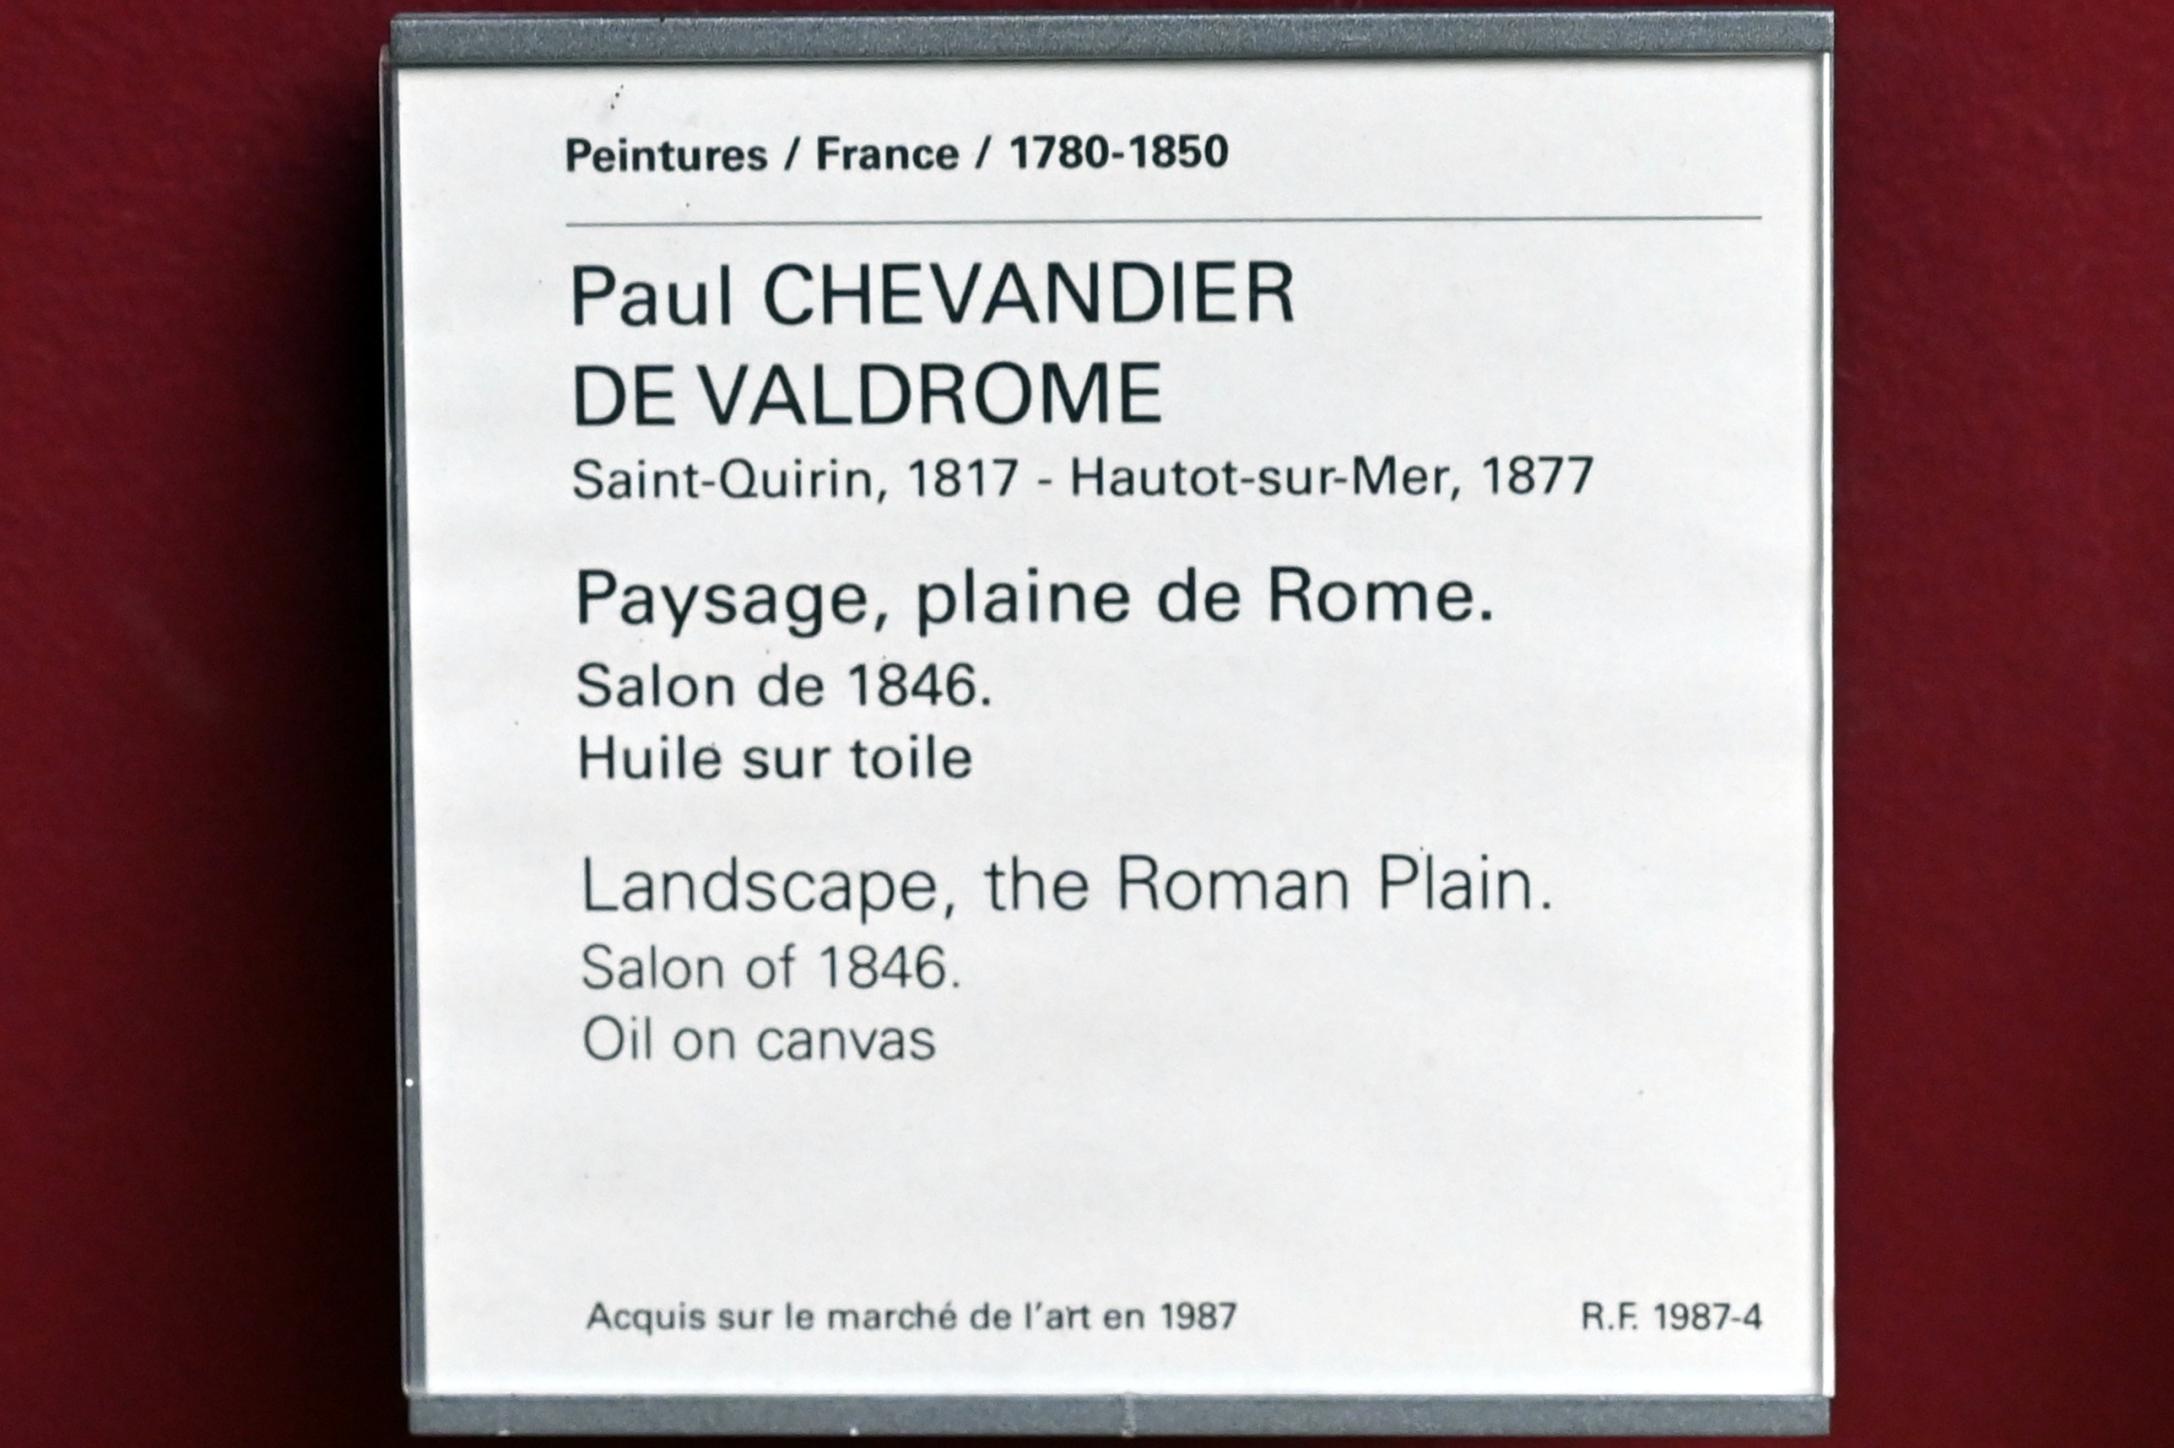 Paul Chevandier de Valdrome (1845), Landschaft in der Ebene von Rom, Paris, Musée du Louvre, Saal 943, vor 1846, Bild 2/2